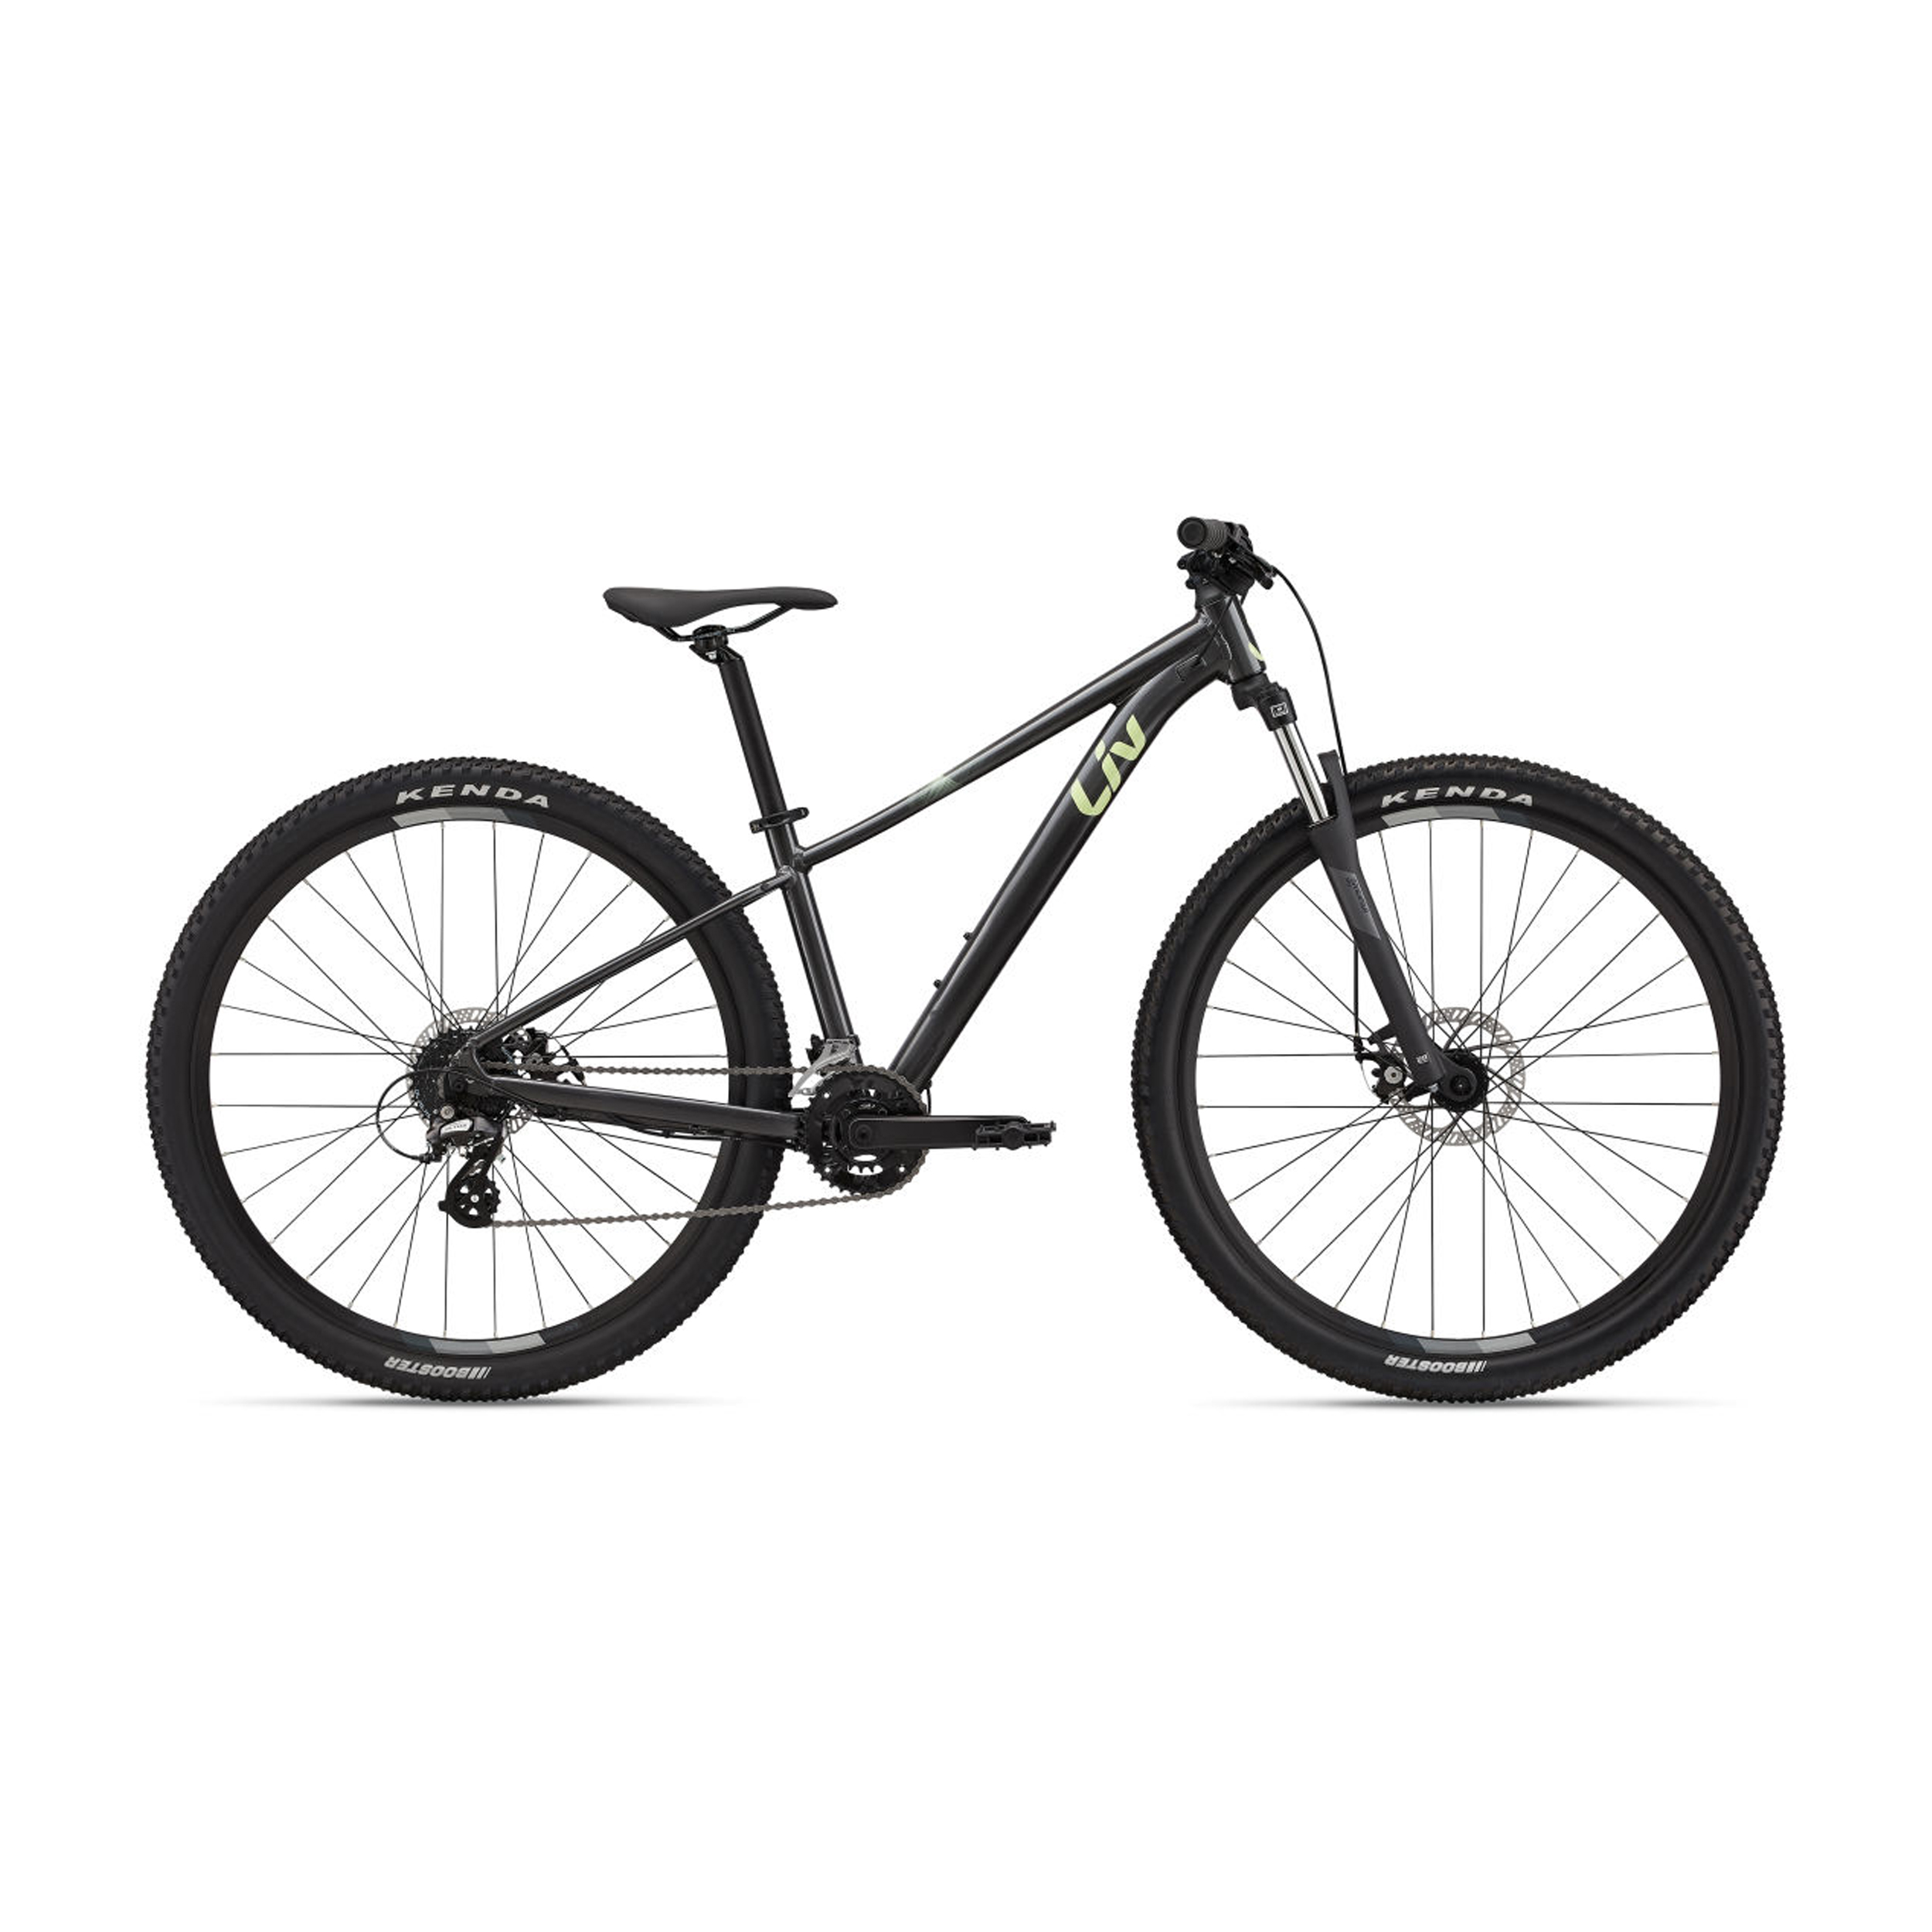 نکته خرید - قیمت روز دوچرخه کوهستان لیو مدل TEMPT 4 سایز 27.5 خرید